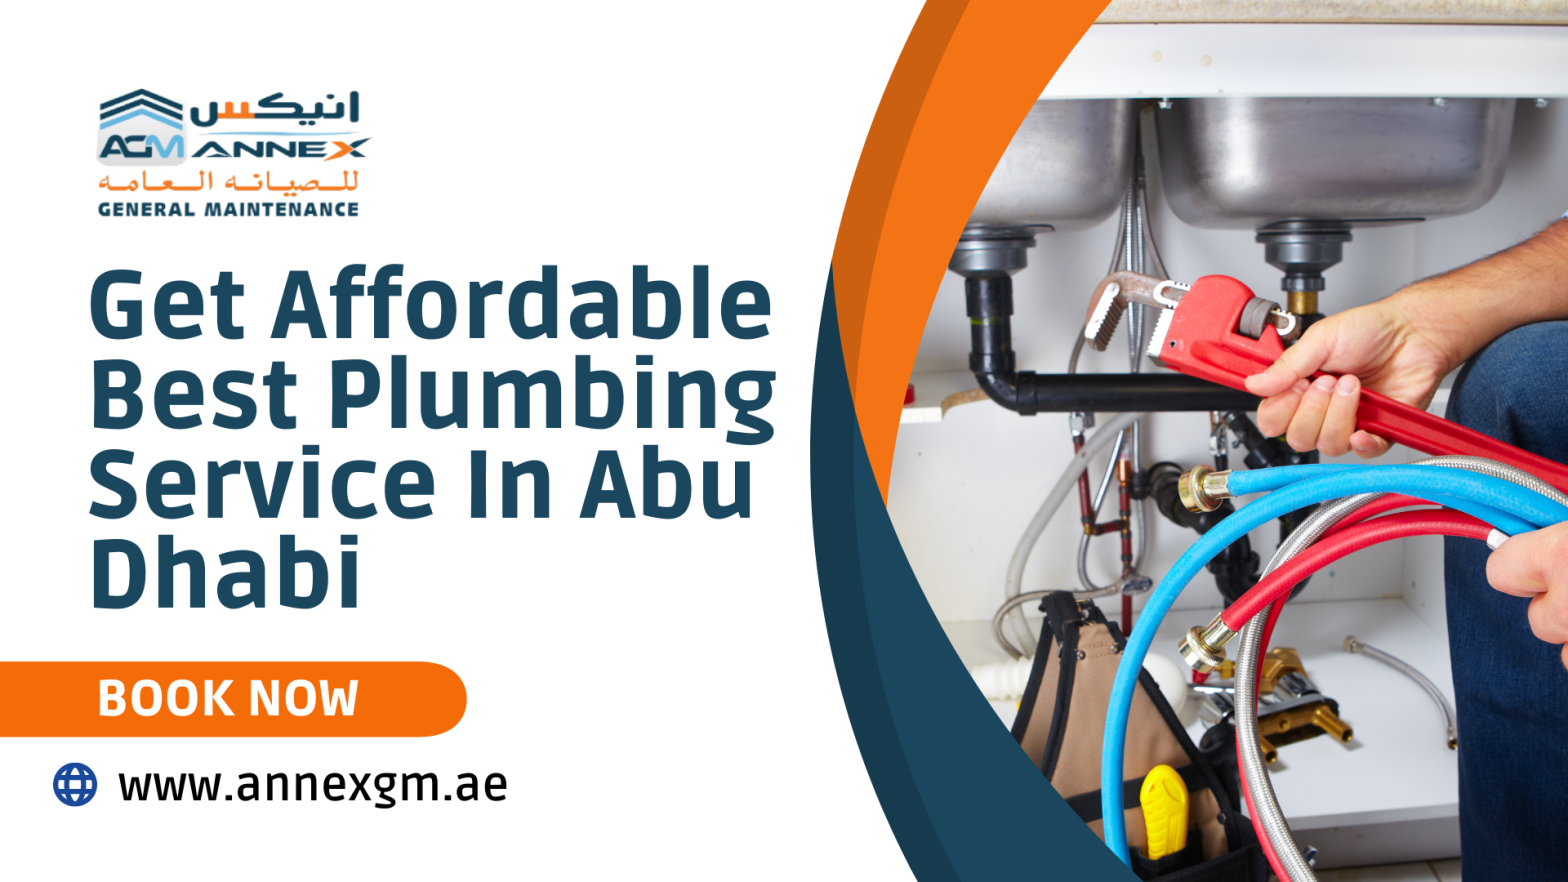 Plumbing Service In Abu Dhabi